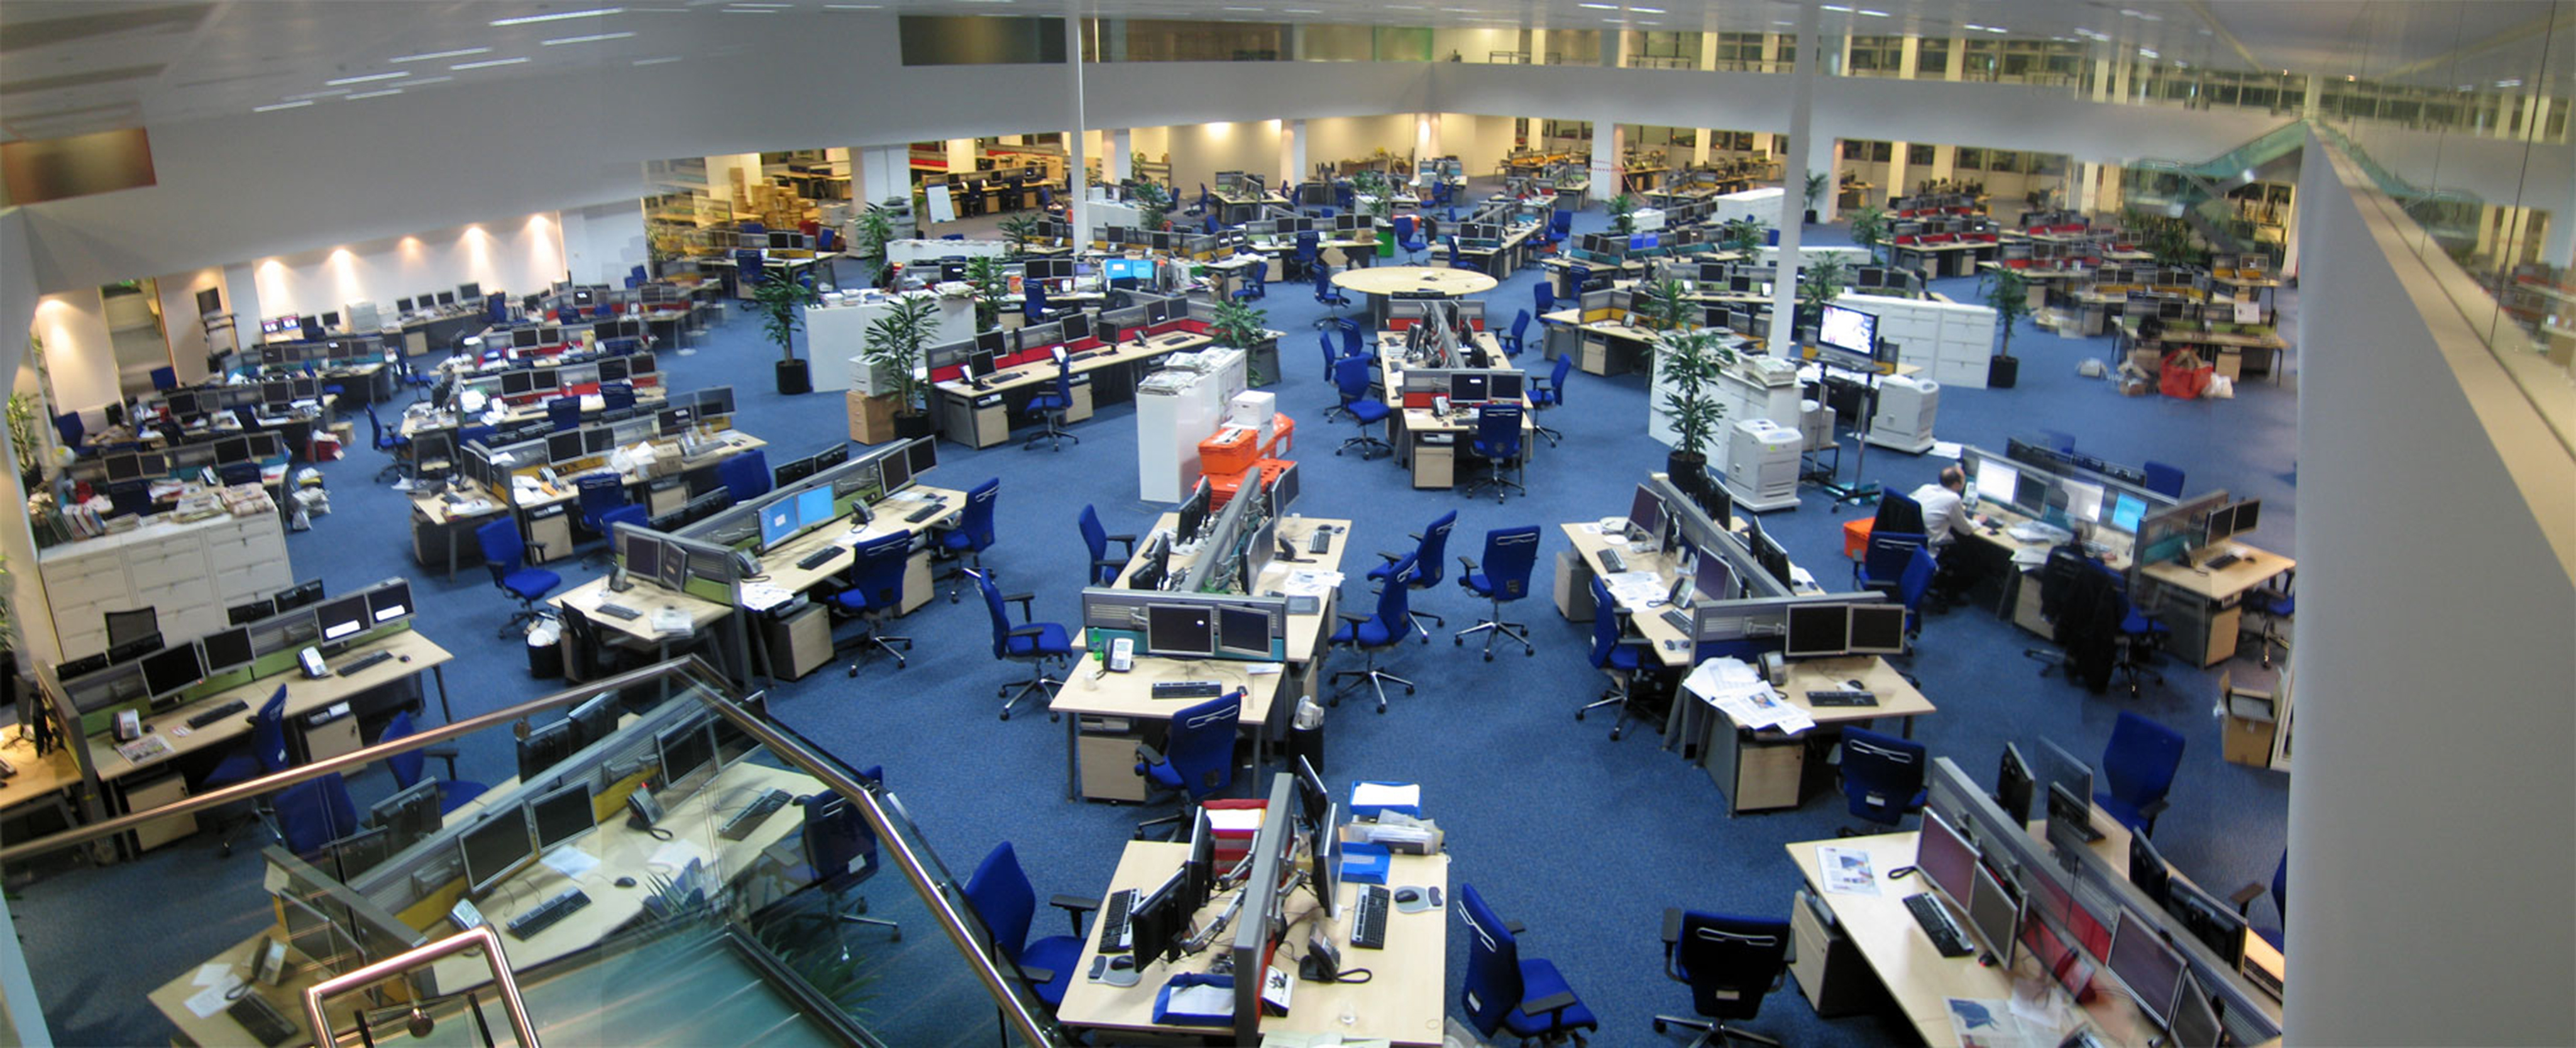 تُظهر هذه الصورة غرفة أخبار مفتوحة كبيرة مع مساحة كافية لاستيعاب حوالي 200 موظف.